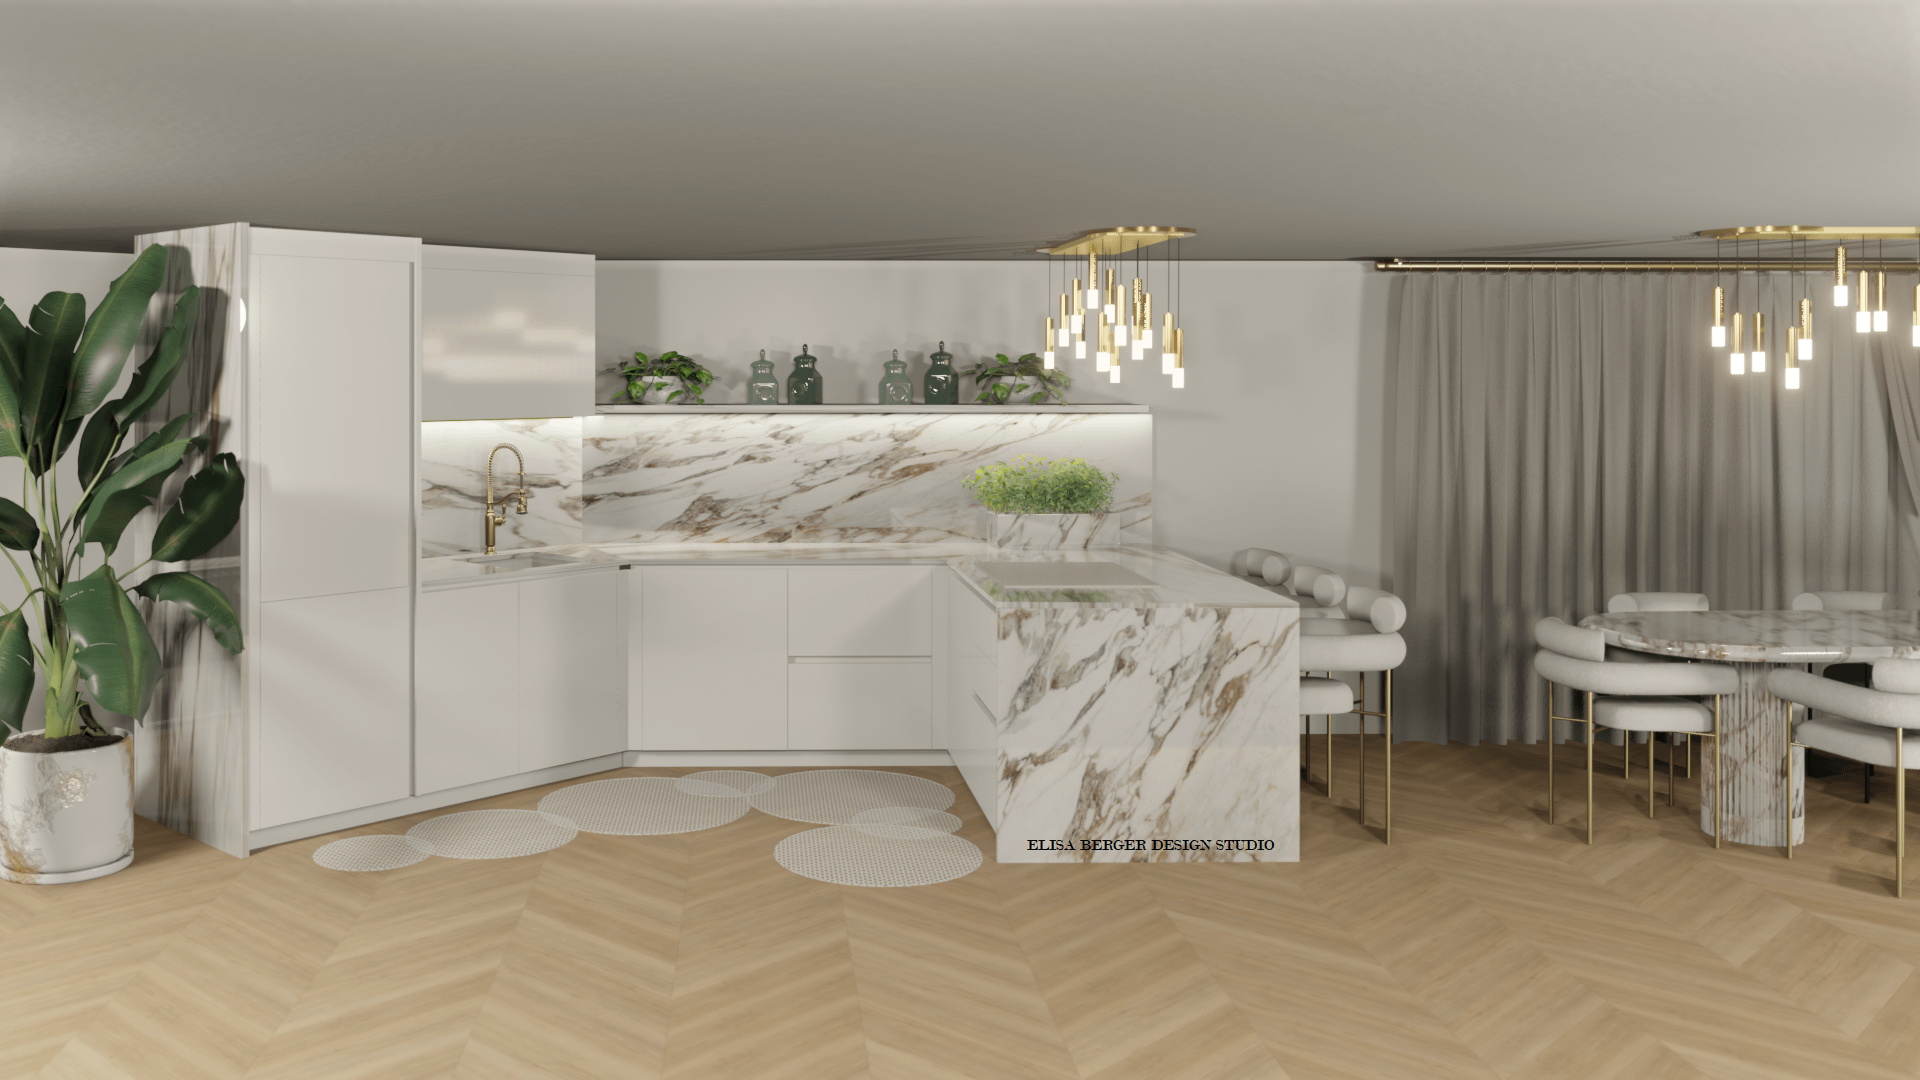 luxury kitchen, progetto cucina lusso, Elisa Berger Interior Design Studio Lugano Ascona, Negozio arredamento lugano, milano zurich ascona